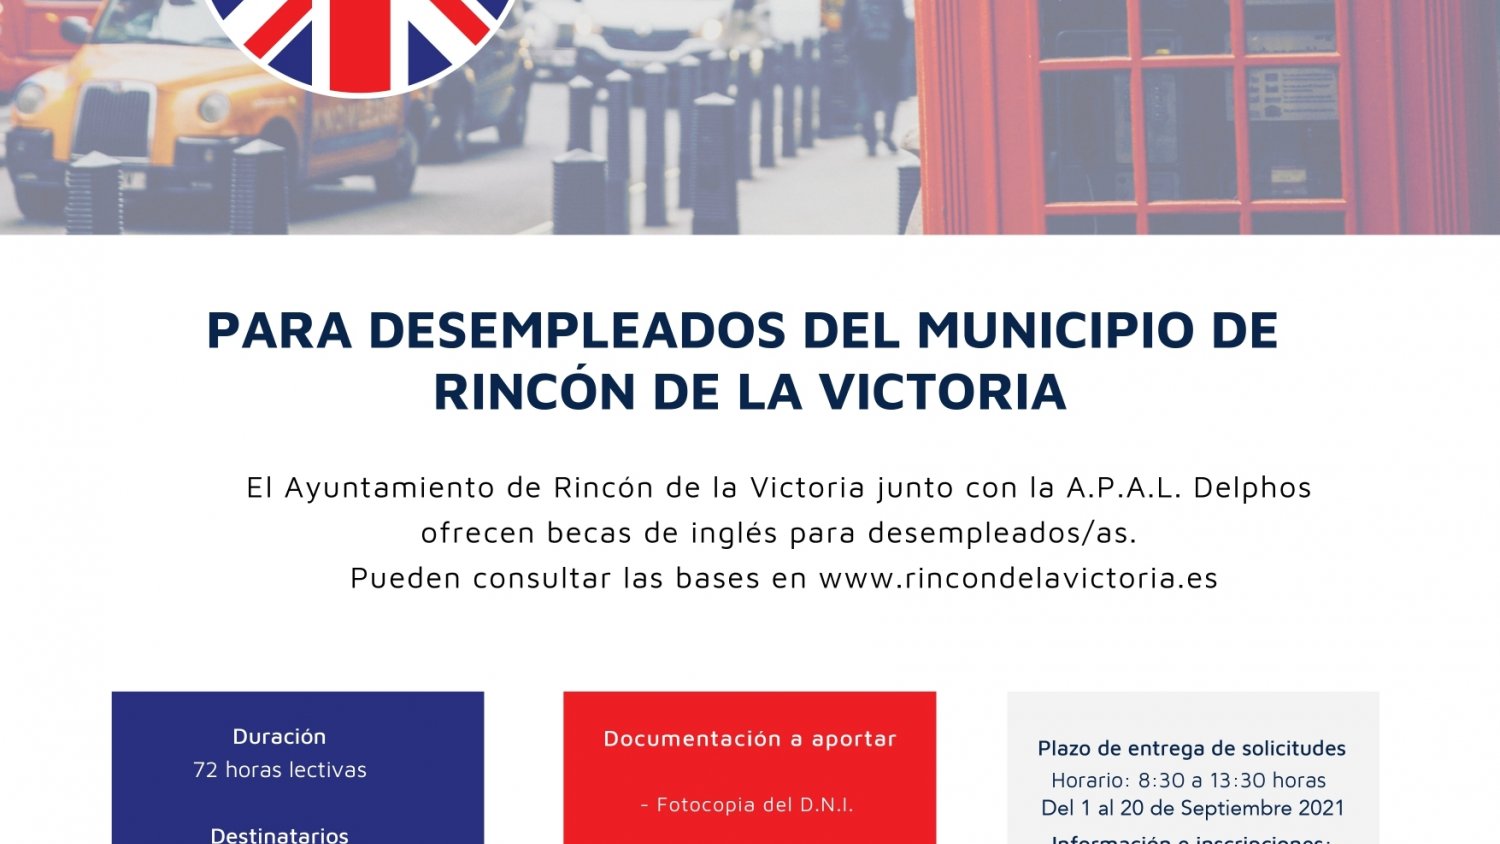 Rincón de la Victoria convoca 30 becas de inglés gratuitas para los desempleados del municipio